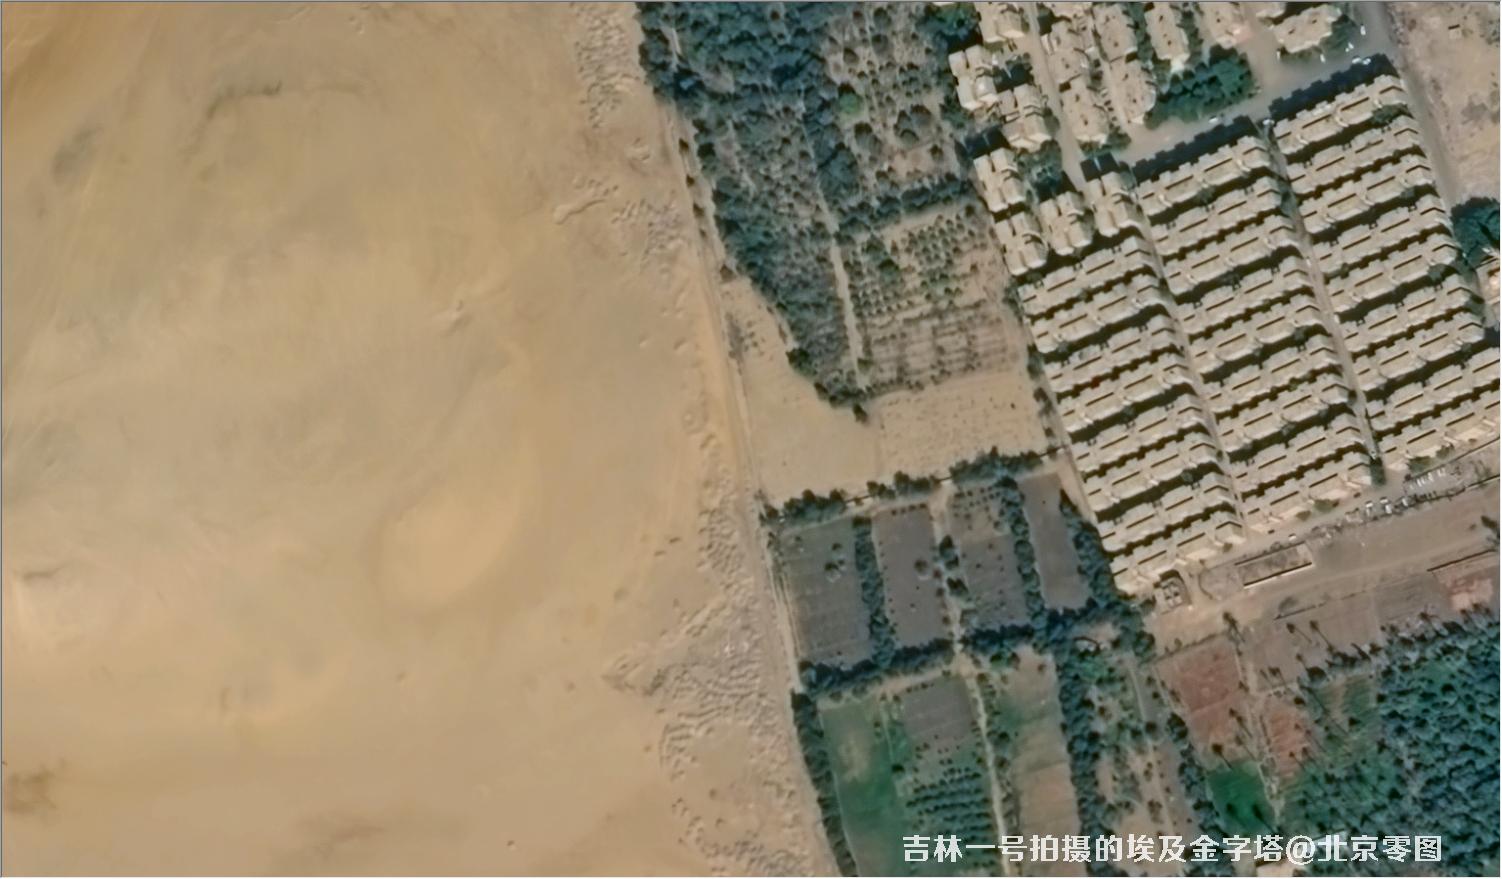 吉林一号宽幅01A卫星拍摄的埃及金字塔卫星图